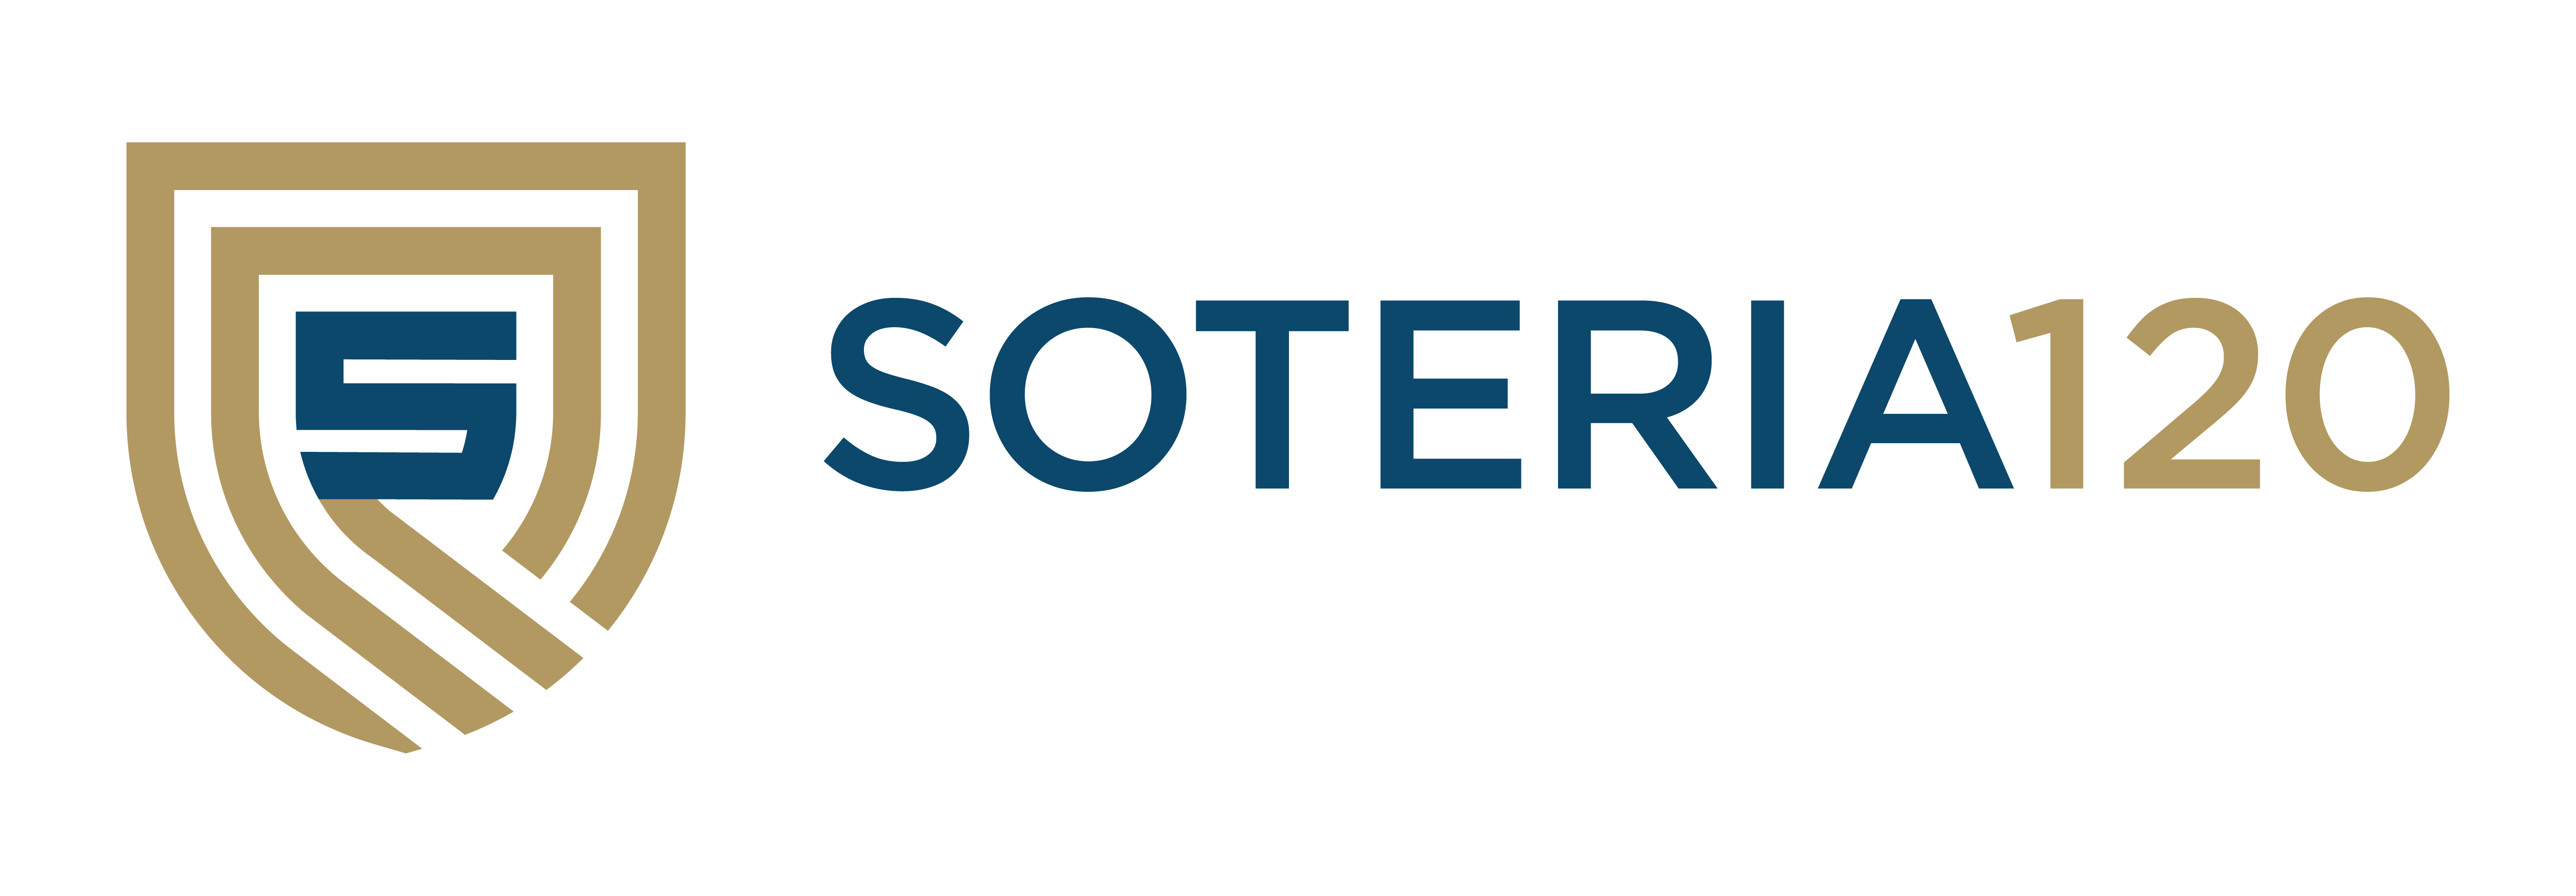 Soteria120 Logo